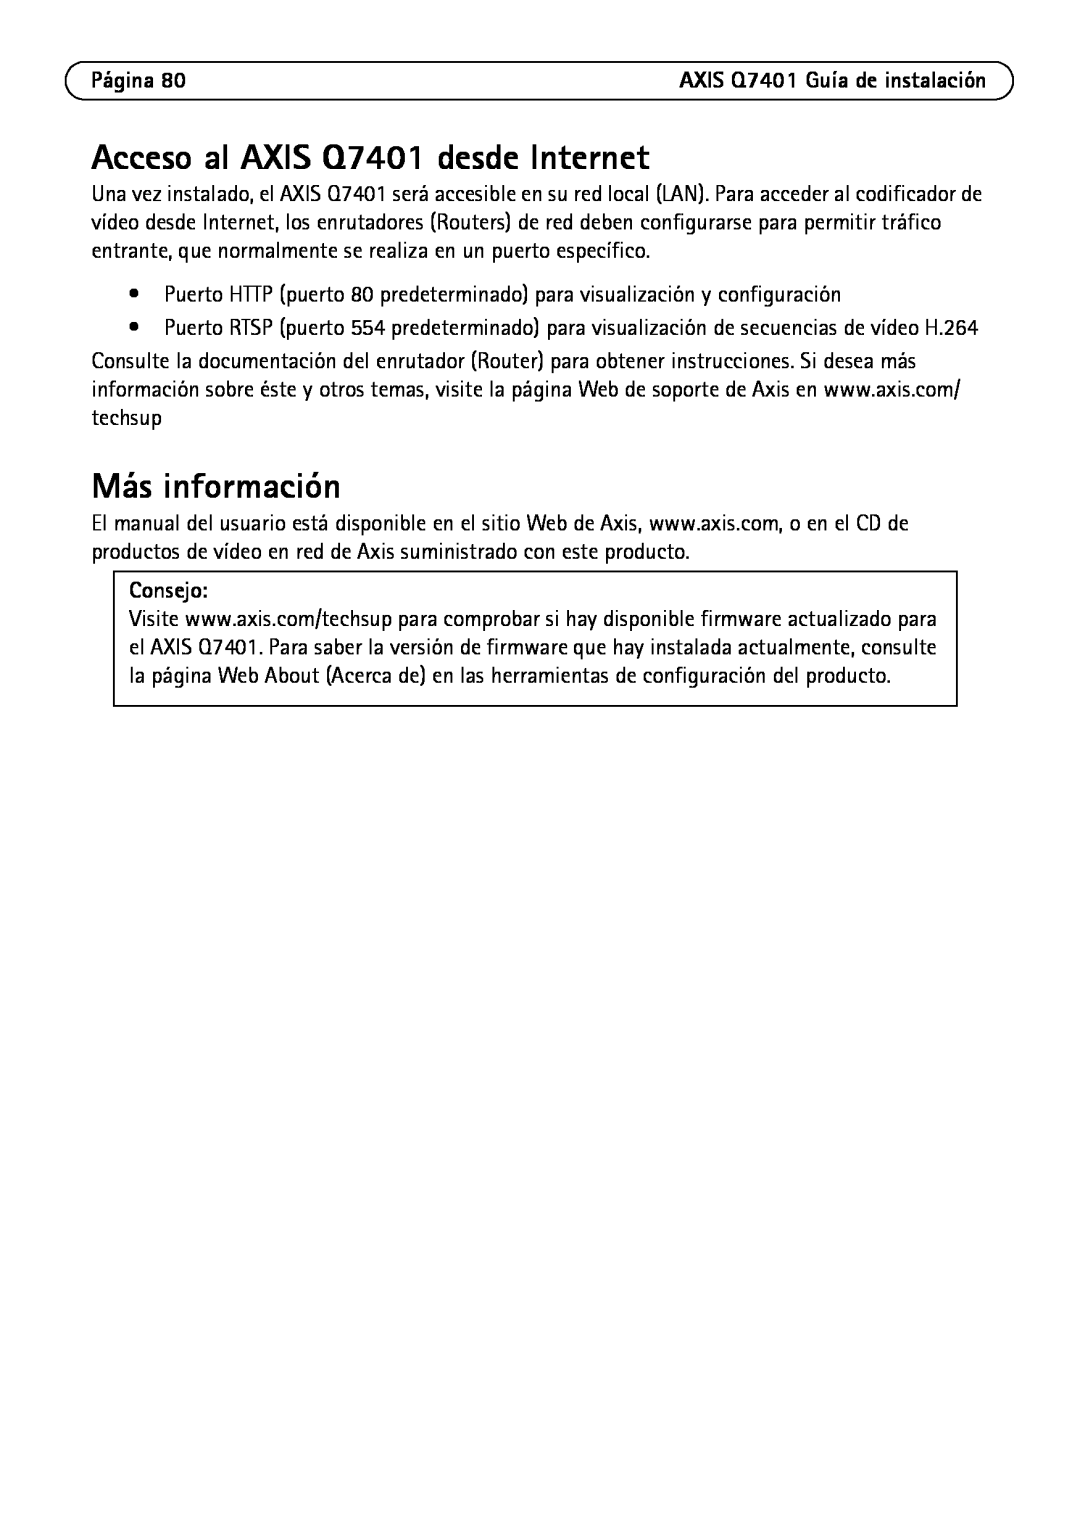 Axis Communications manual Acceso al AXIS Q7401 desde Internet, Más información, Página, Consejo 